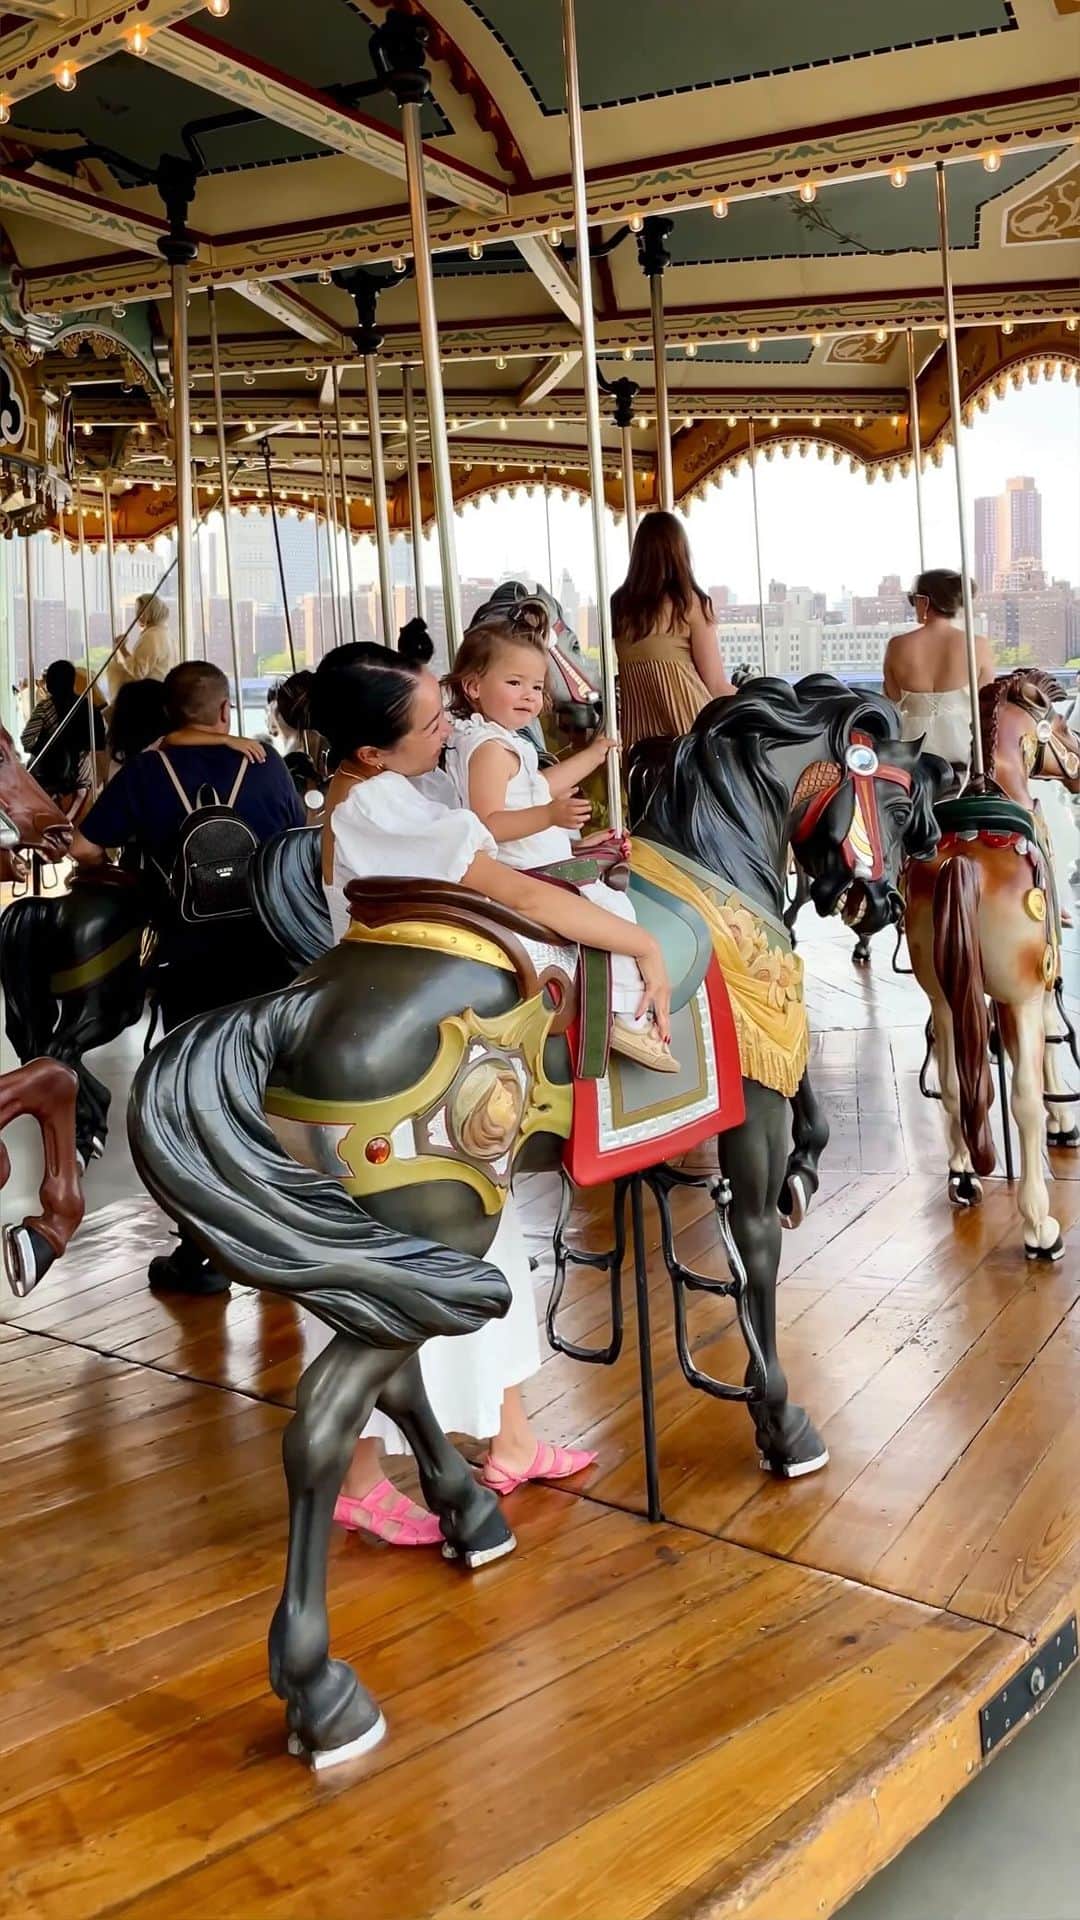 ウェンディー・グエンのインスタグラム：「3 AMAZING CAROUSELS IN NYC 🎠 From carved horses 🎠 to aquatic creatures 🐡 to dancing bugs 🐝, these are our favorite carousels!   📍 Jane’s Carousel | Brooklyn, New York  📍SeaGlass Carousel | New York City, New York  📍Bug Carousel | Bronx, New York  Bookmark as your next visit 🔖 Both Jane’s Carousel and SeaGlass Carousel lights up near sunset 🌅 It’s a spectacular sight!   #nyc #carousel #janescarousel #seaglasscarousel #bugcarousel #brooklyn #bronx #thingstodoinnyc #travel #familytravel #newyorkcity」